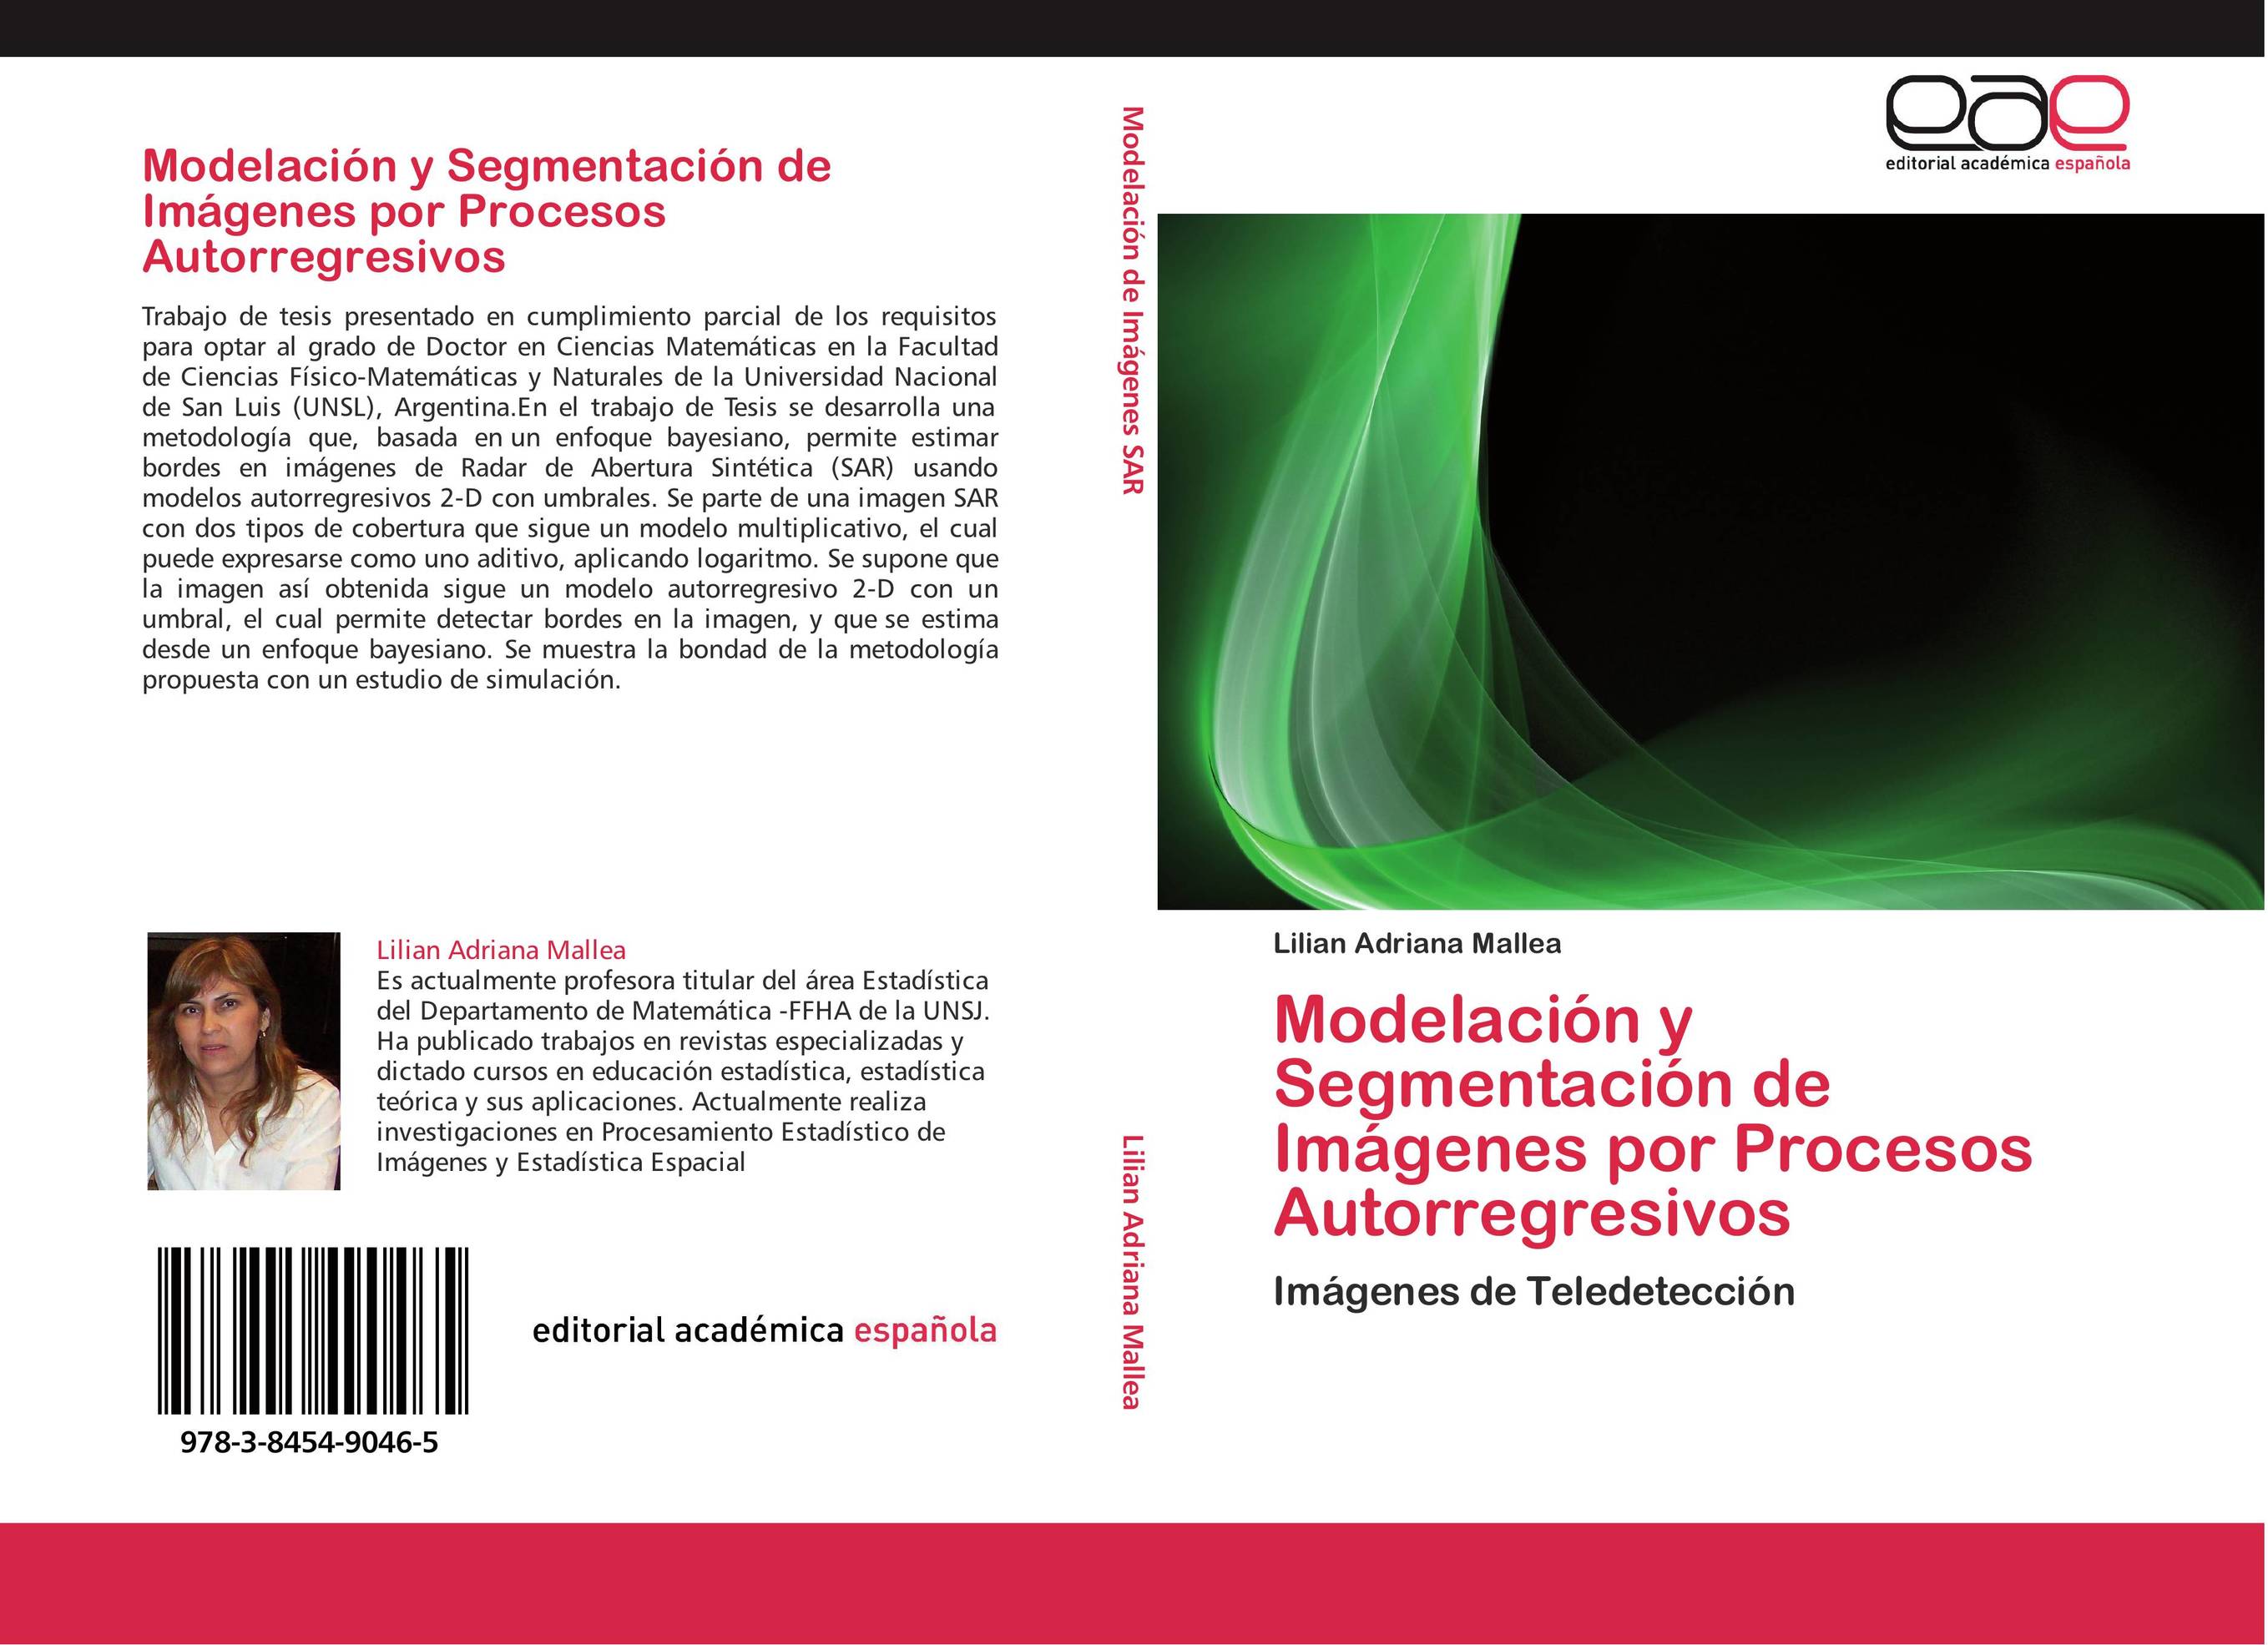 Modelación y Segmentación de Imágenes por Procesos Autorregresivos